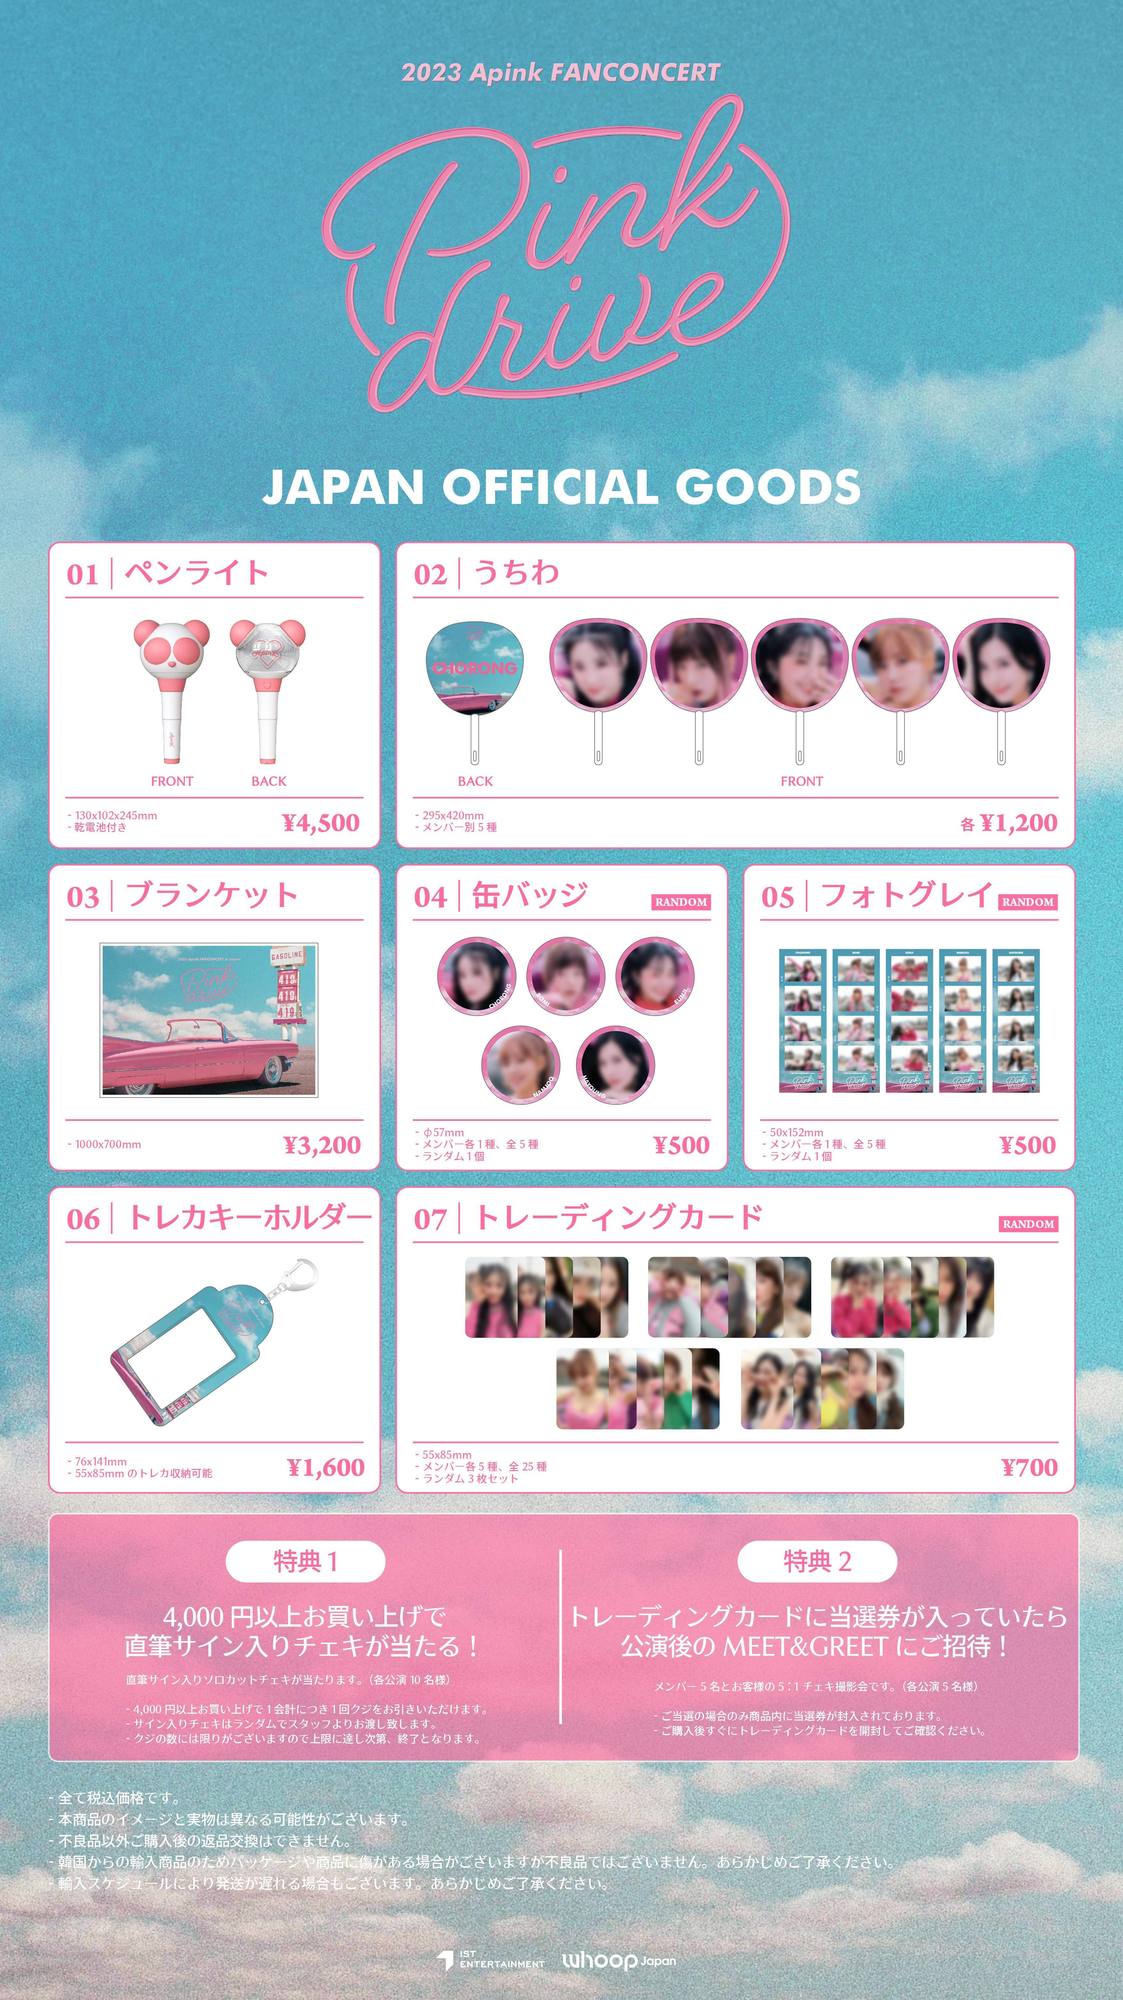 2023 Apink FANCONCERT in Japan [Pink drive]オフィシャルグッズ販売 